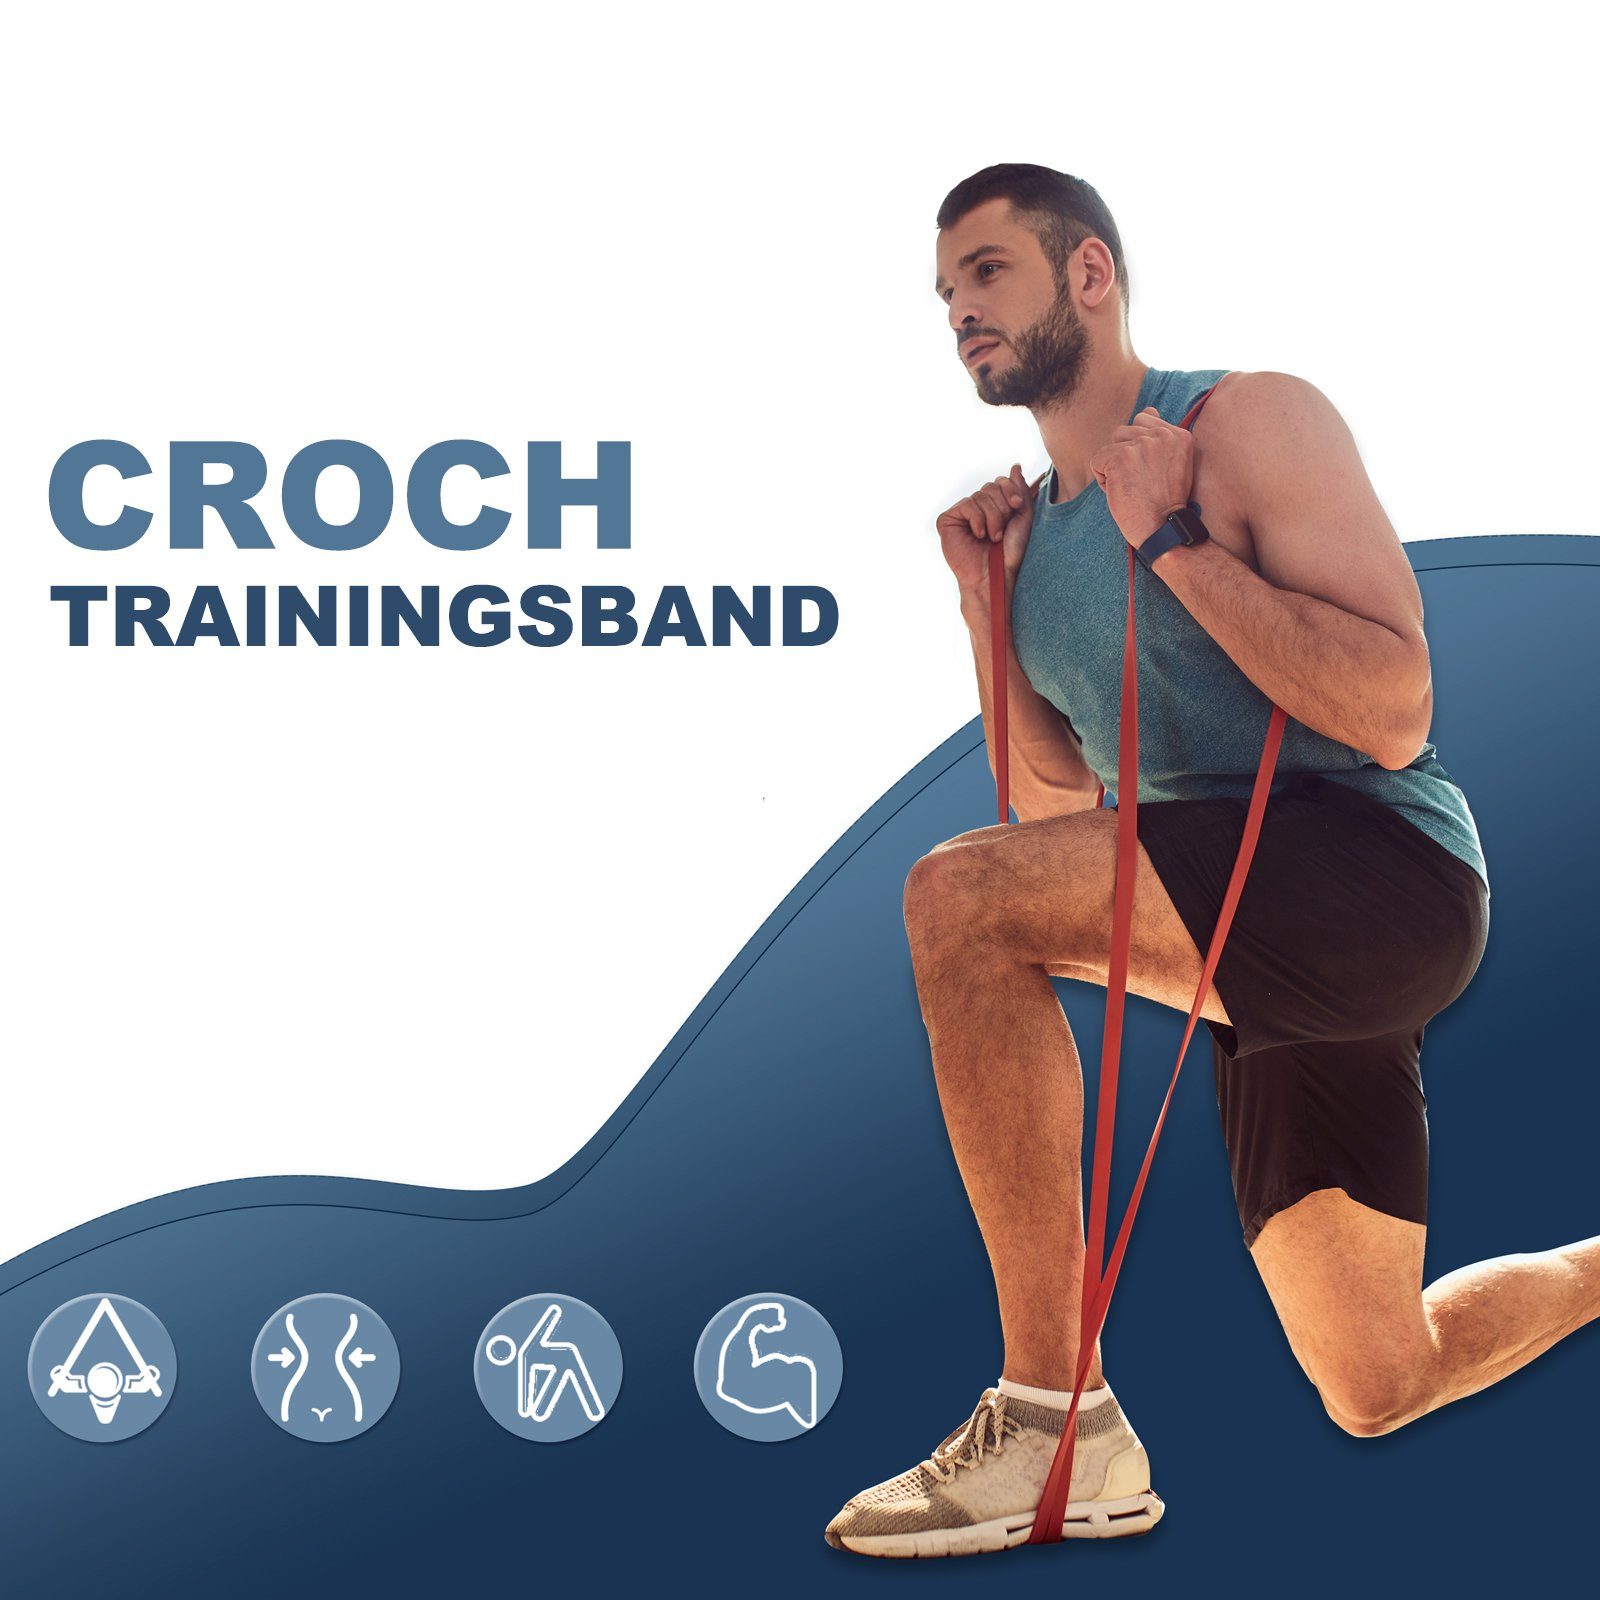 Croch Trainingsband Fitnessband aus Widerstand Klimmzughilfe 5-15KG 1St.: Set, Rot Naturlatex und für Unterstützung